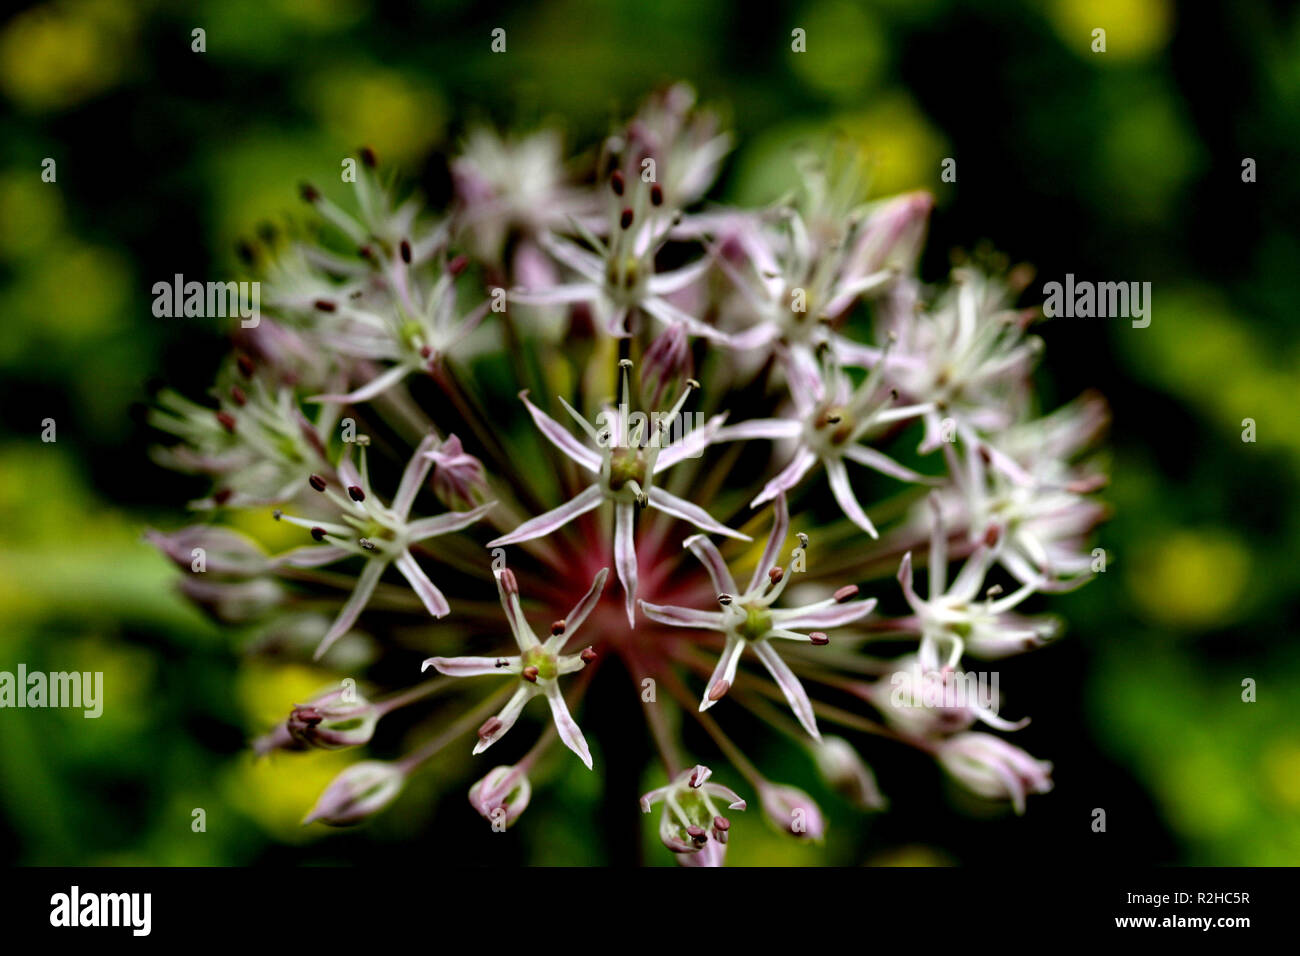 Allium Foto de stock